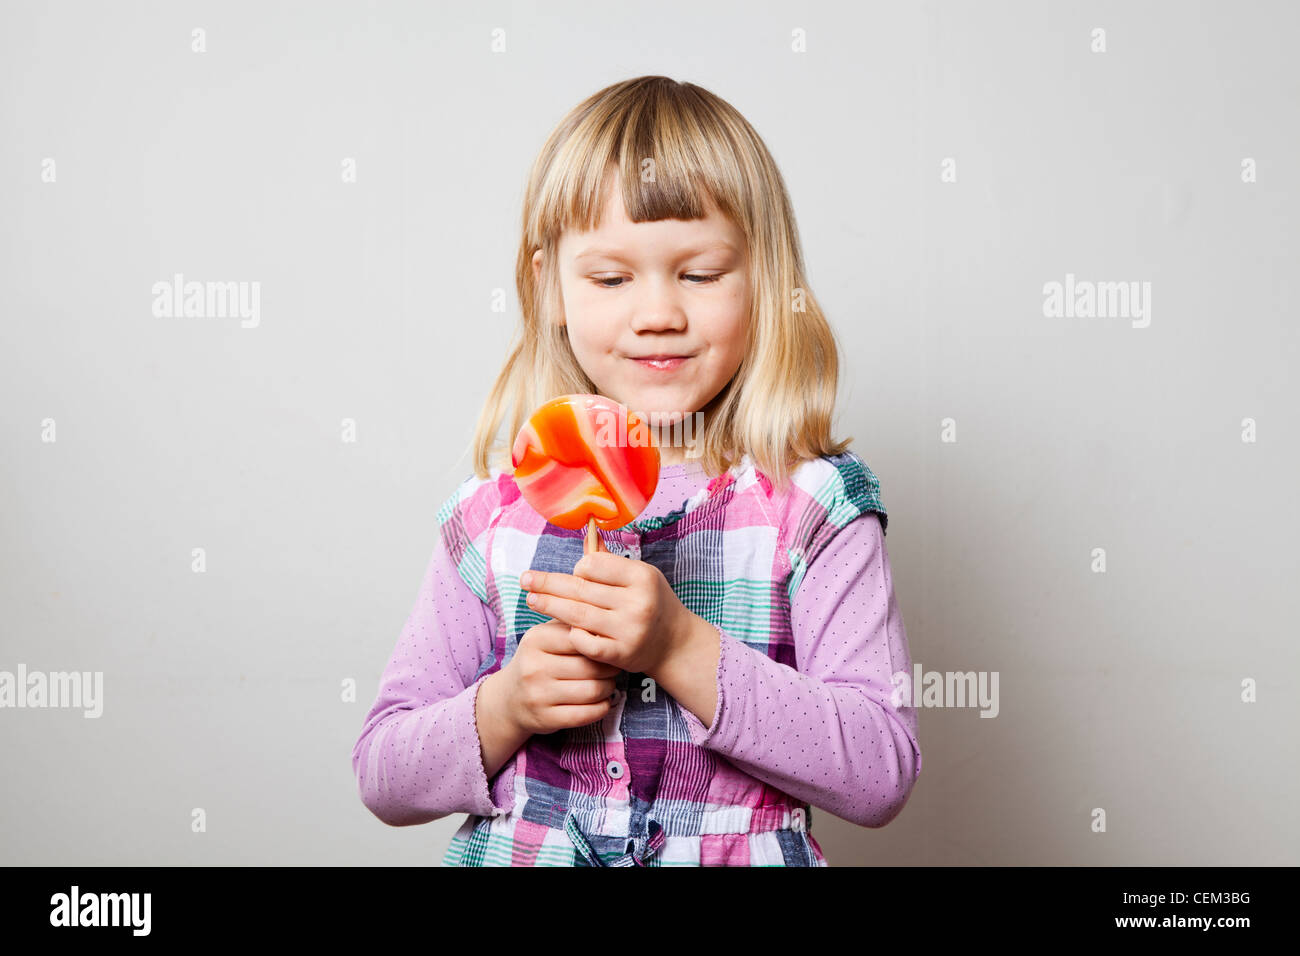 Niedliche kleine Mädchen mit einem großen orangefarbenen Lutscher. Studio gedreht. Stockfoto